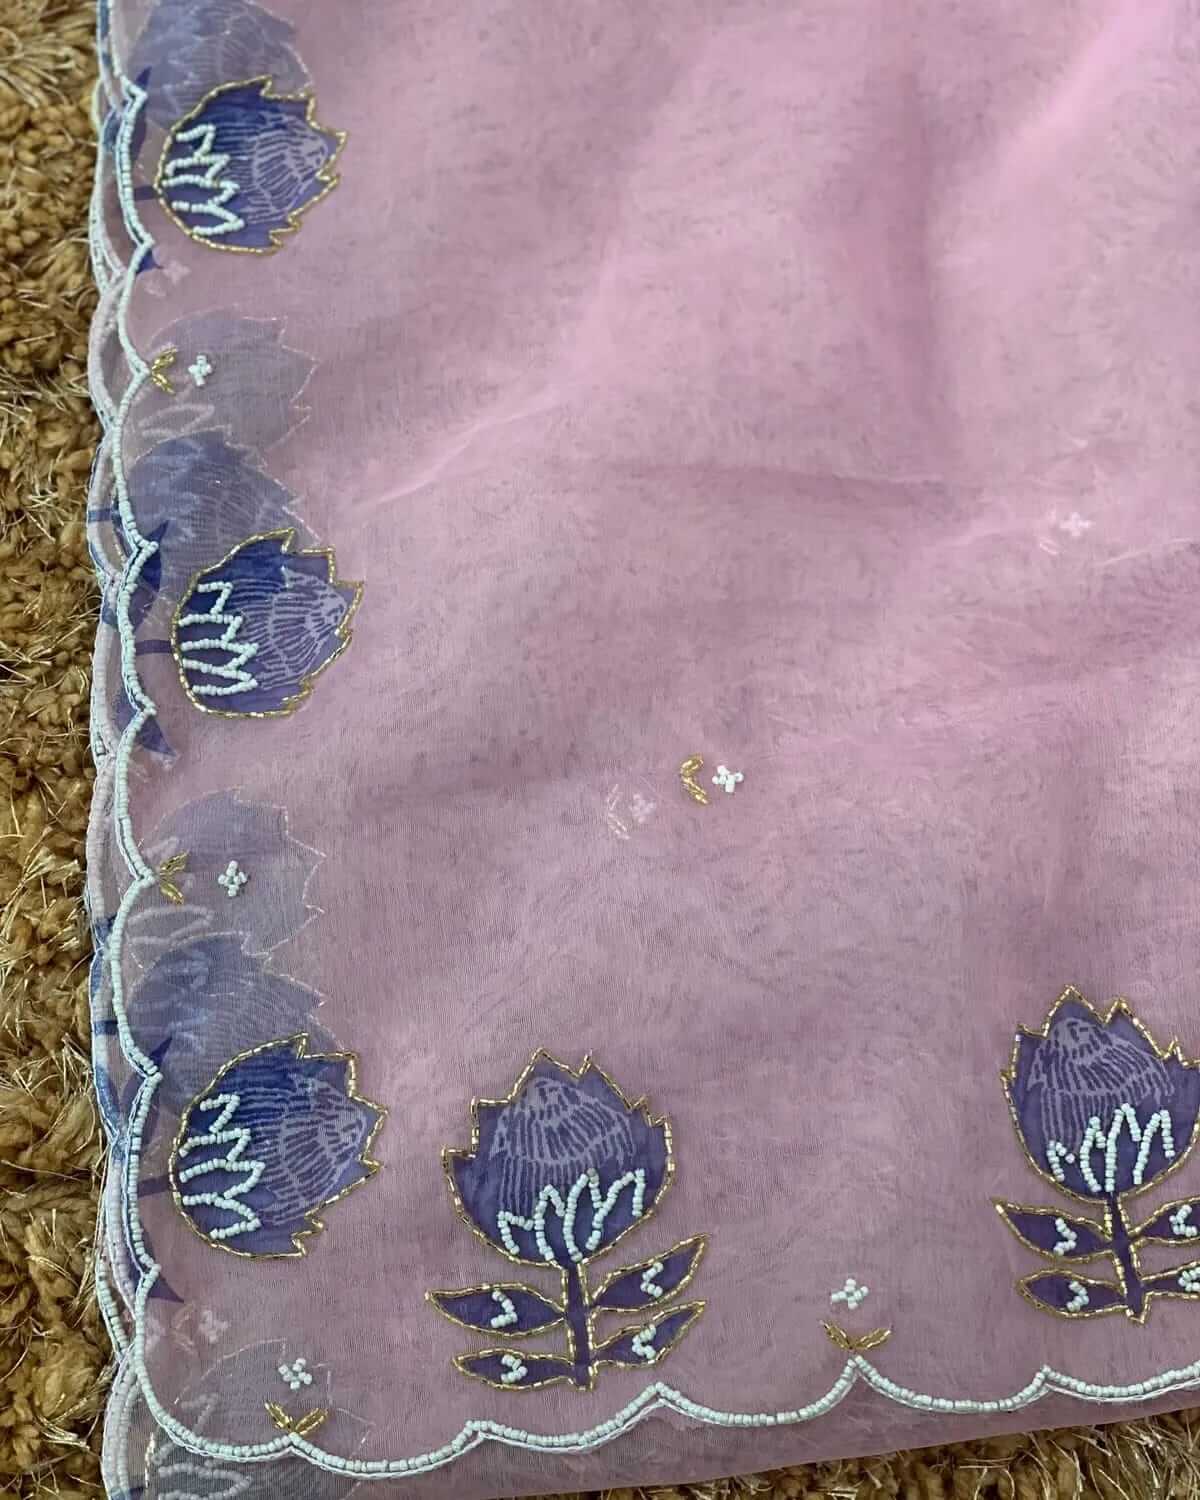 khatli work sari